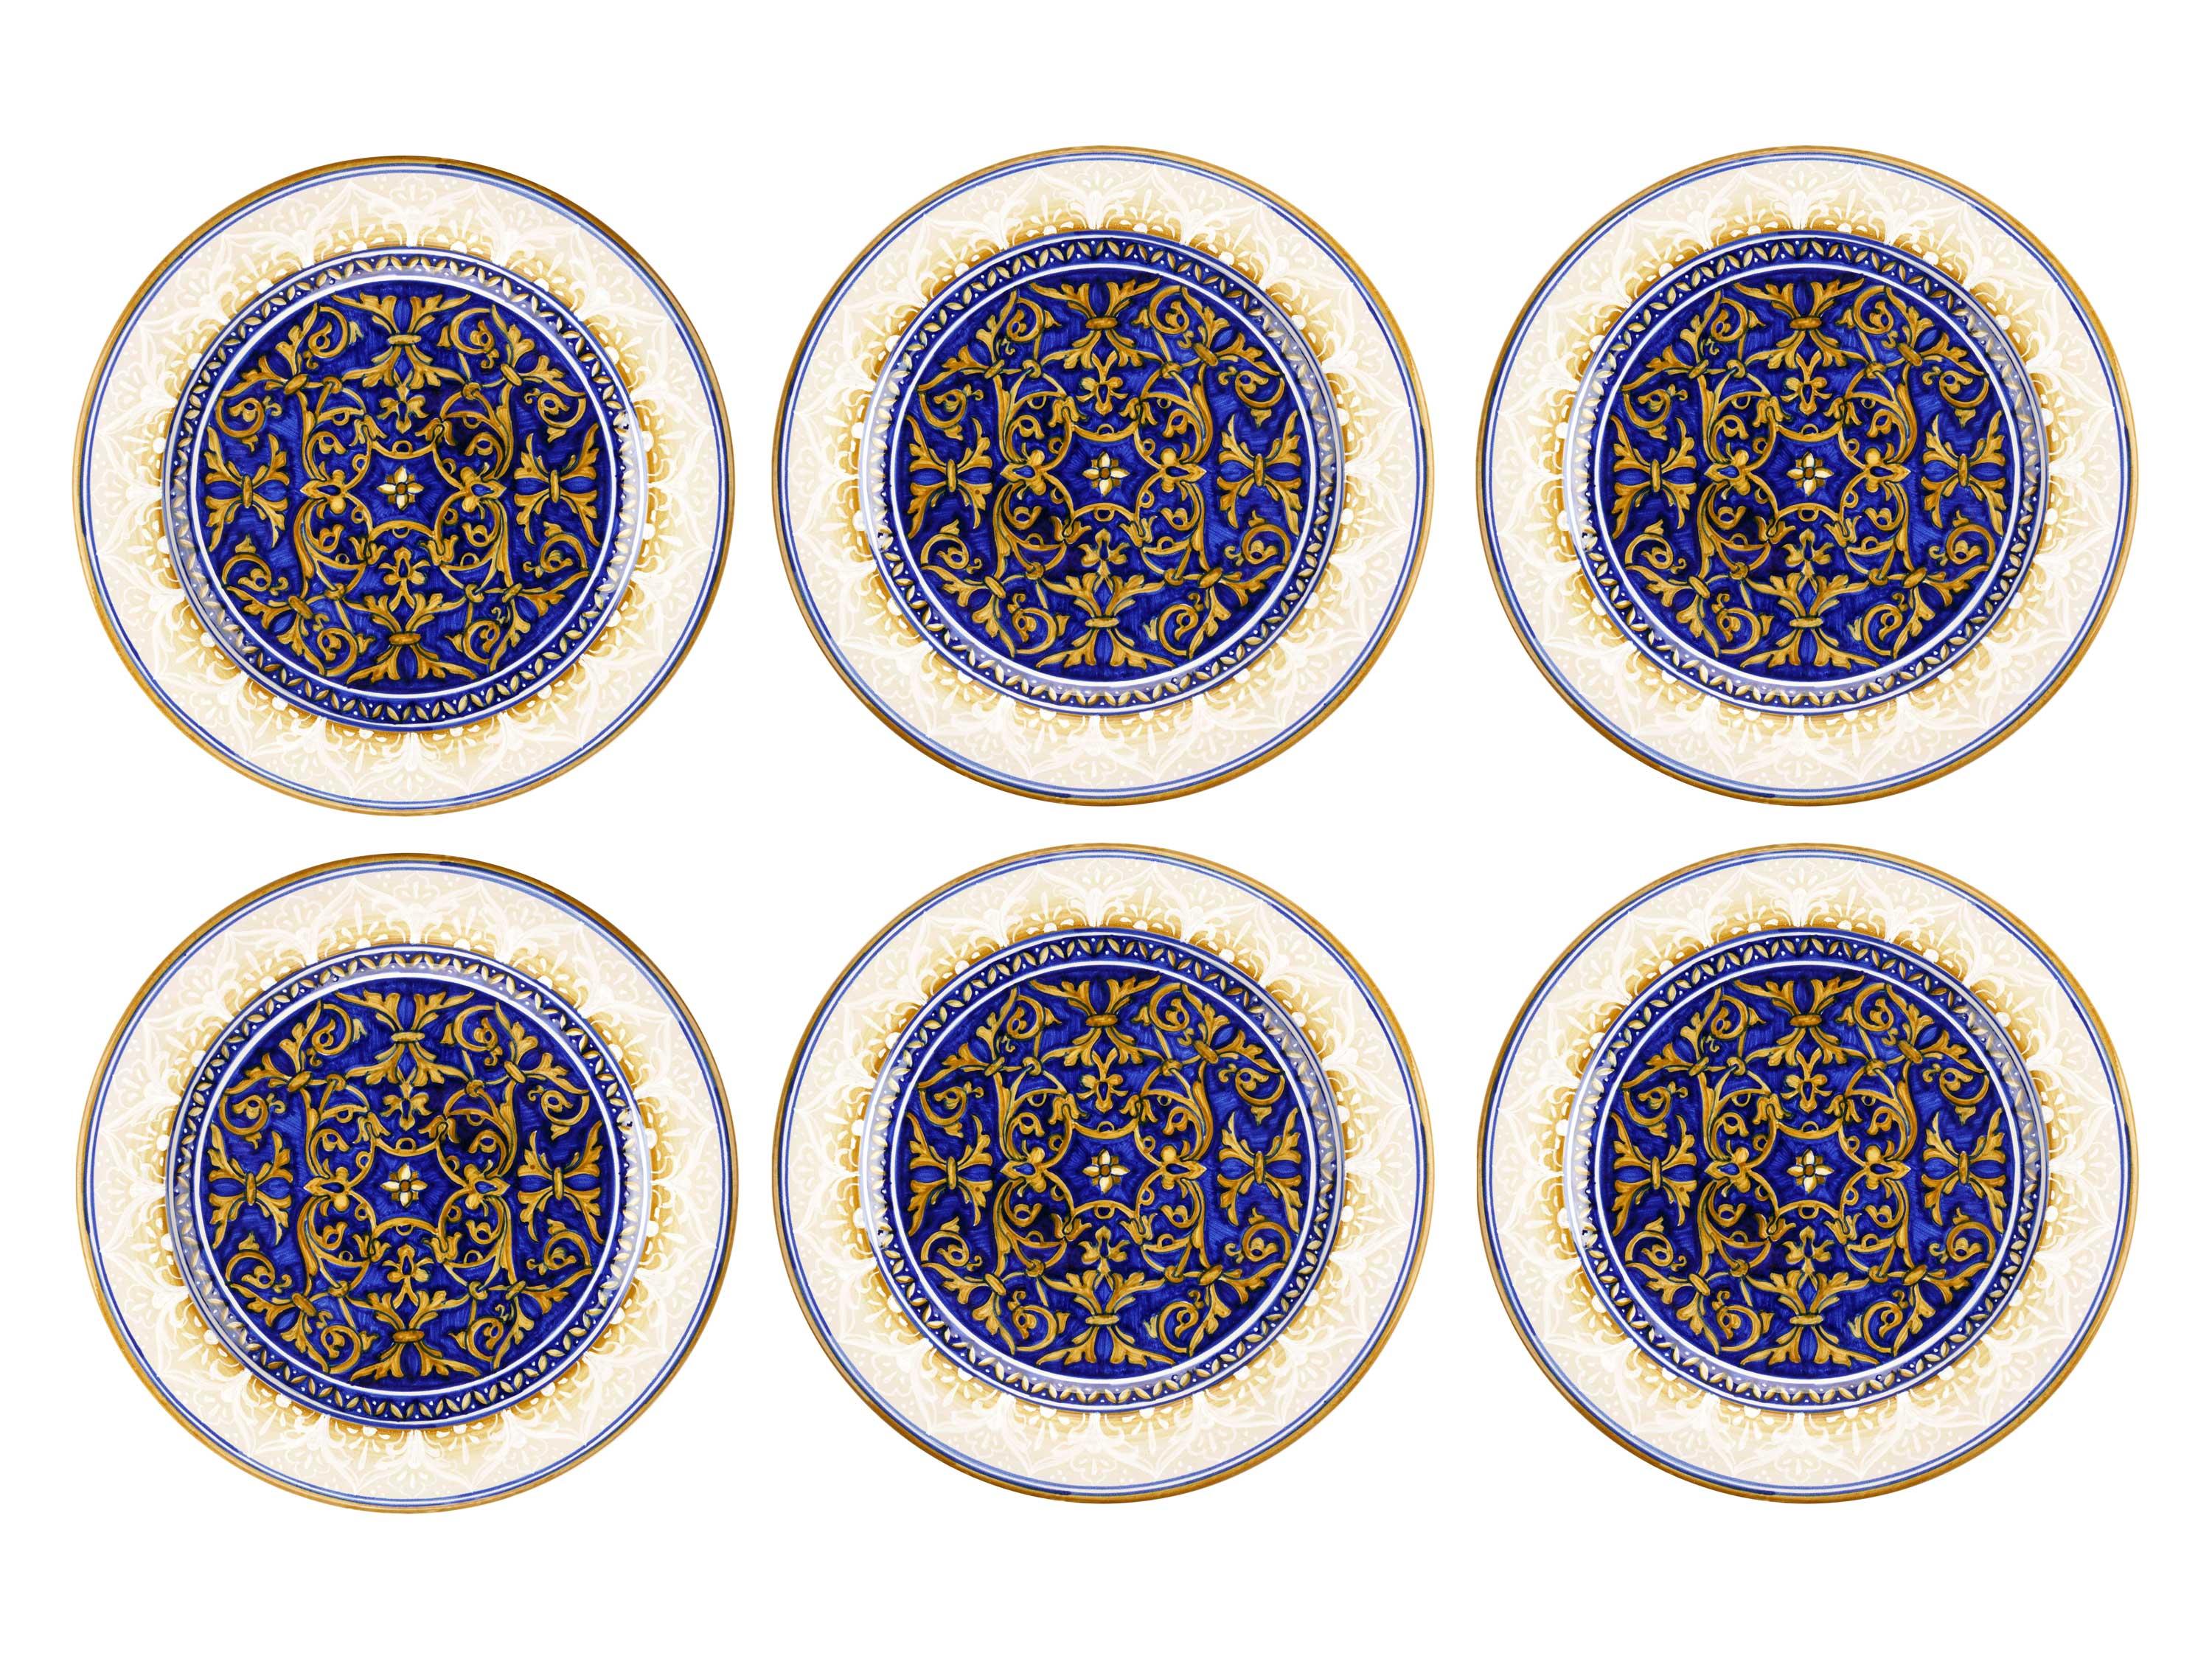 Ce magnifique ensemble de 6 assiettes de présentation en majolique est fabriqué et peint à la main en Italie selon la technique de peinture originale de la Renaissance, inchangée au fil du temps, que nous respectons à la lettre.
Le décor damassé